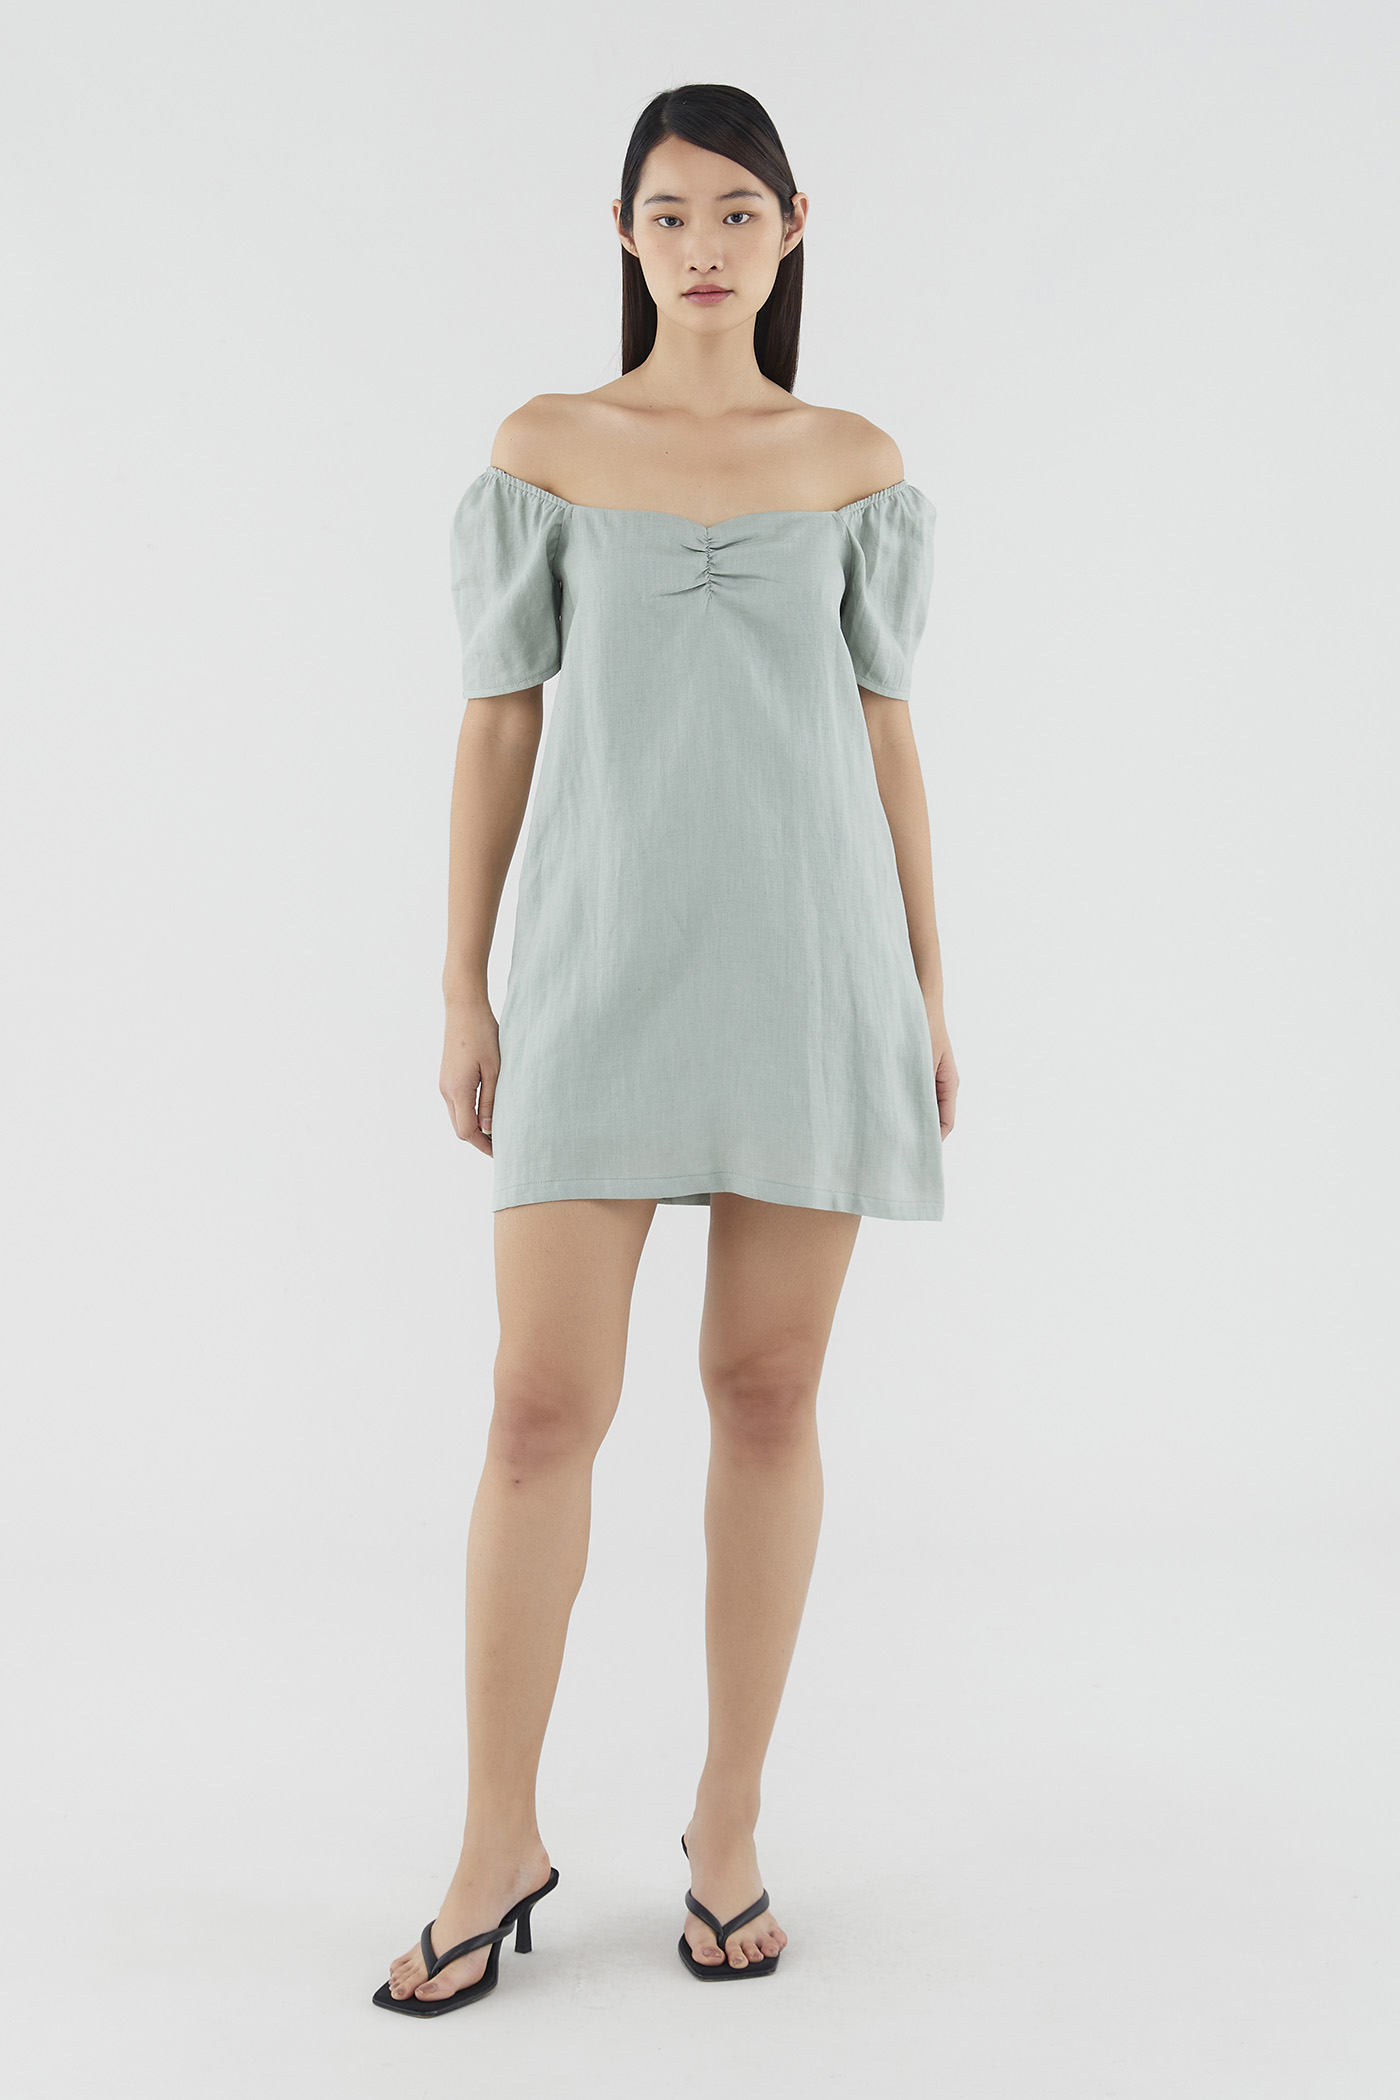 Josilyn Linen Mini Dress